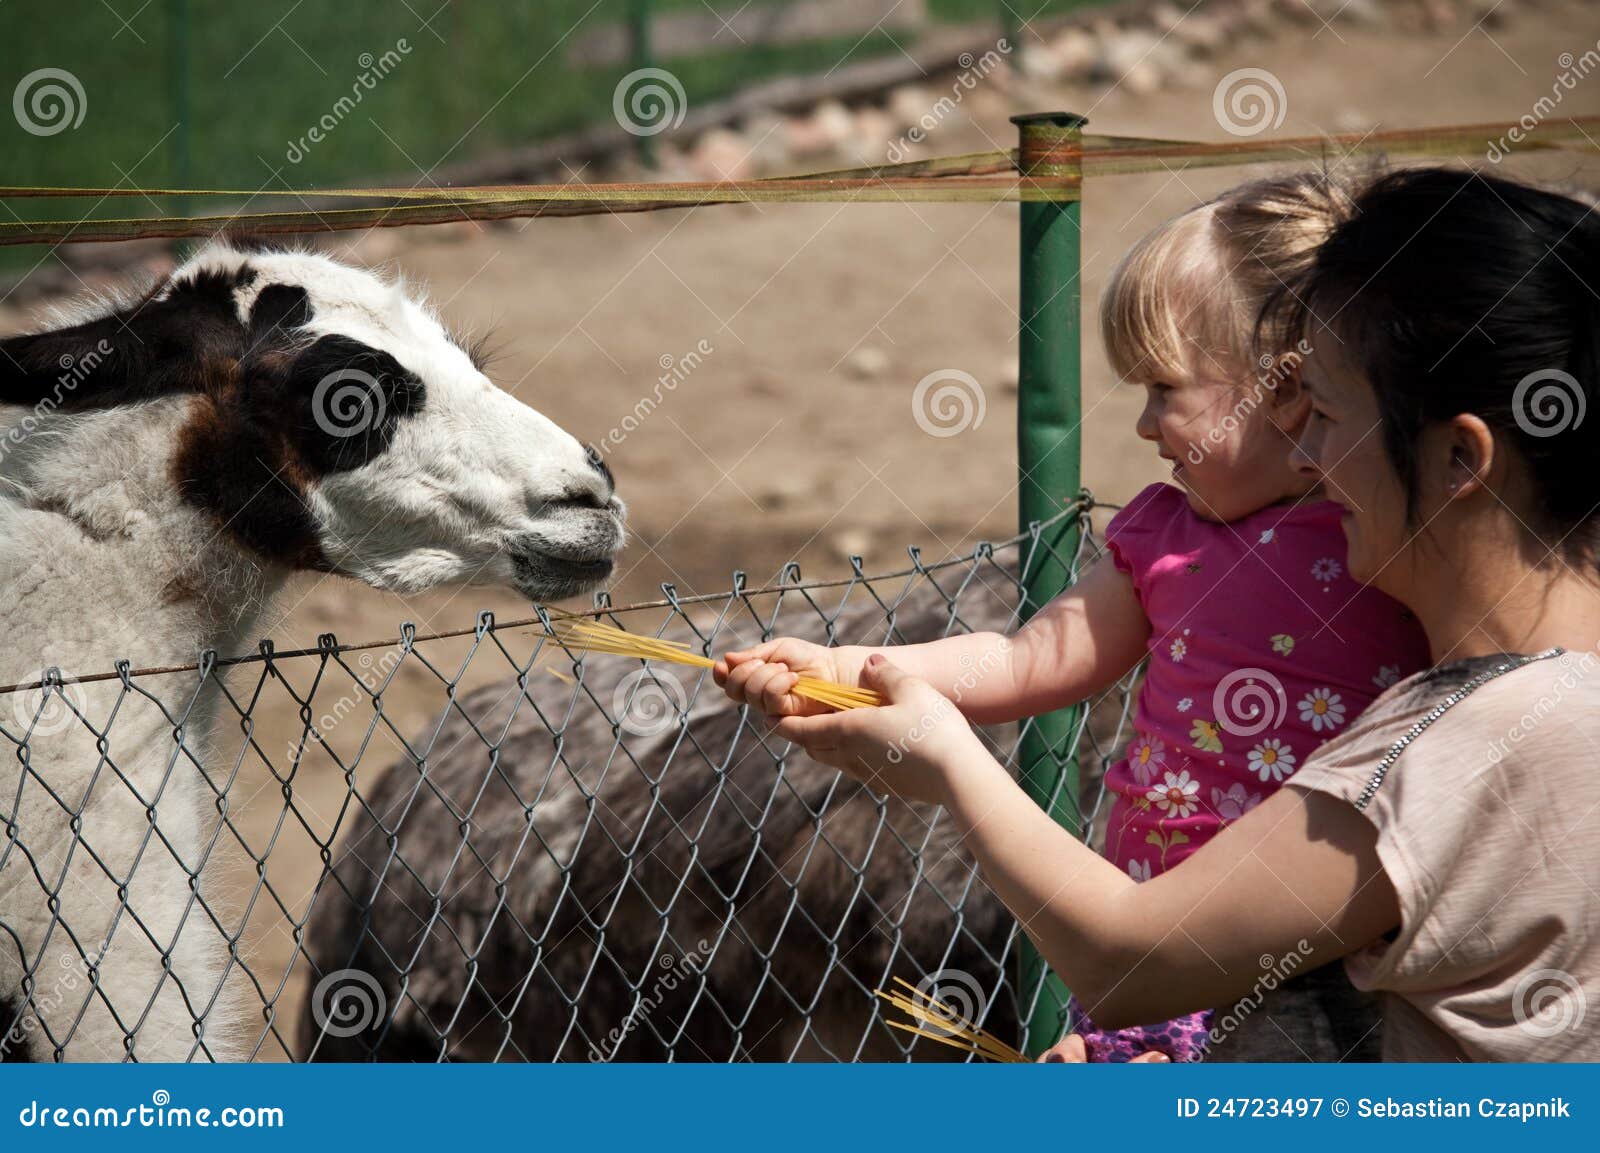 feeding zoo llama